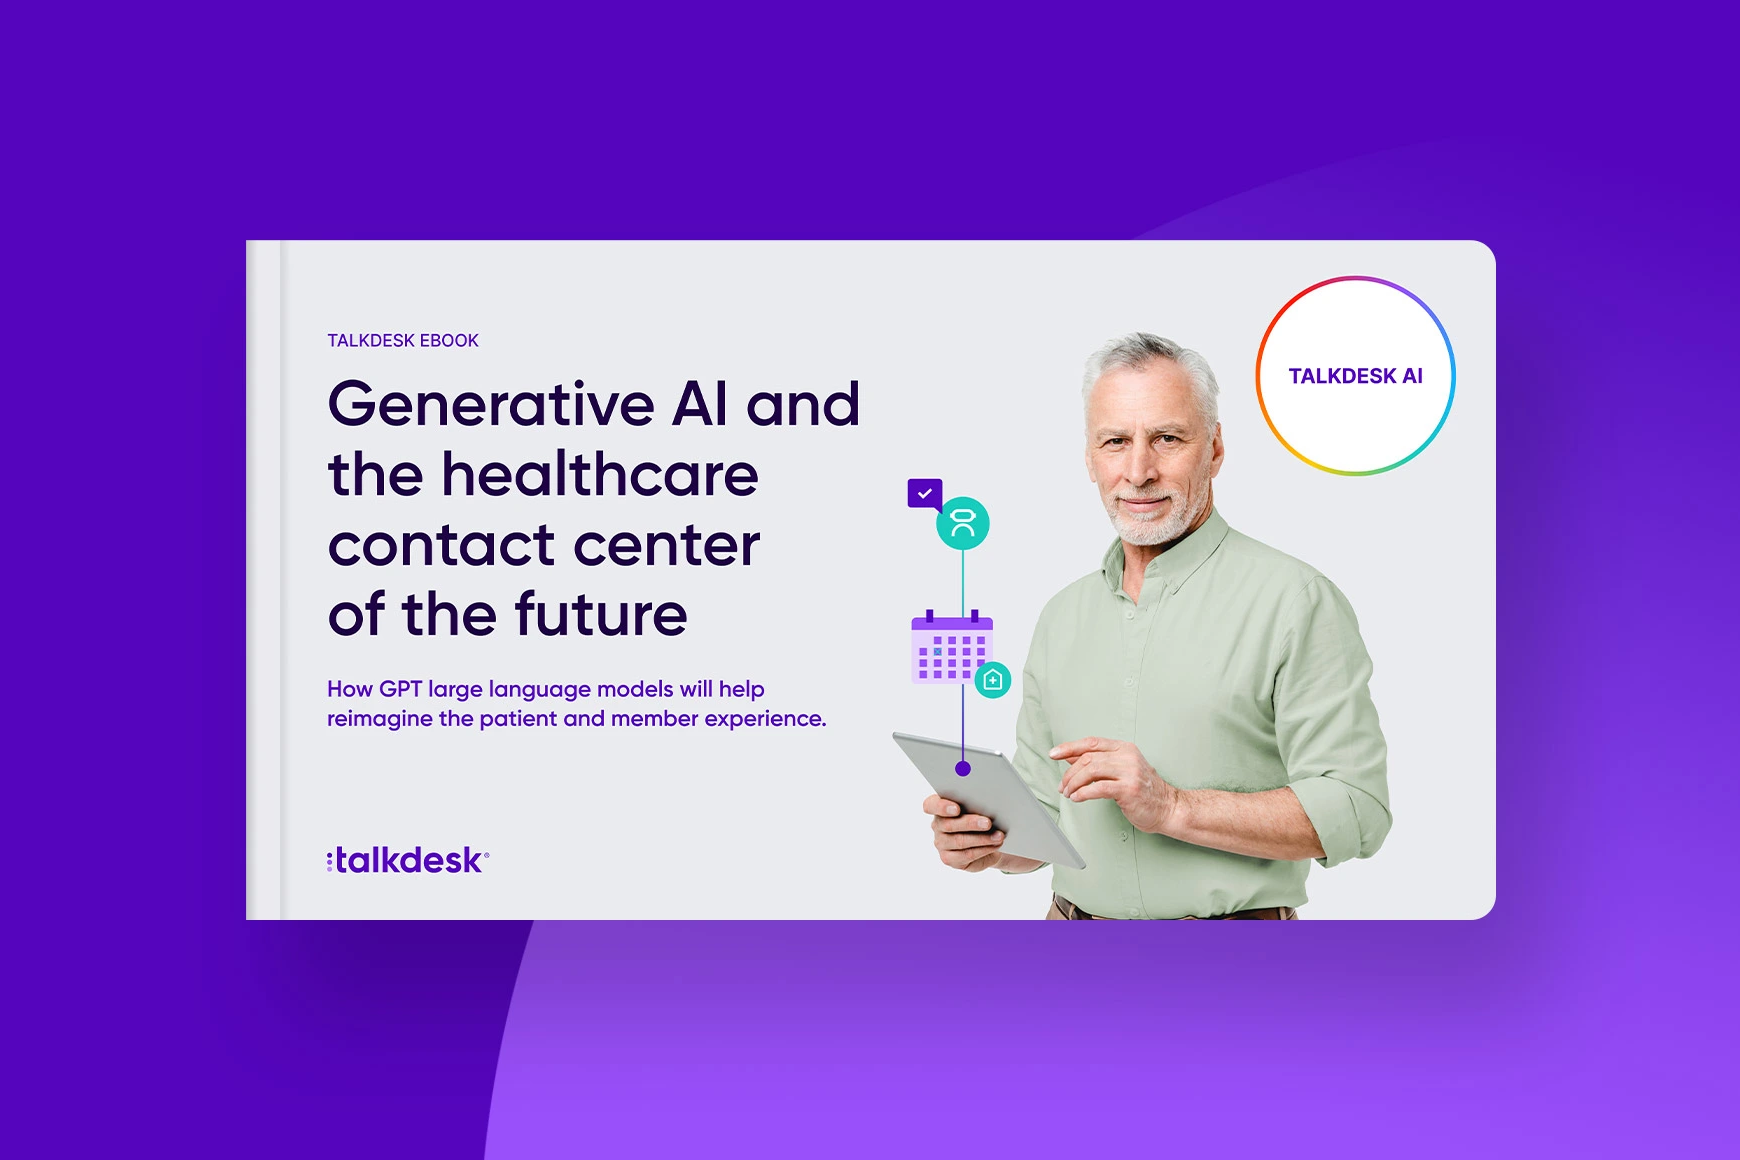 La IA generativa y el centro de contacto del sector sanitario del futuro